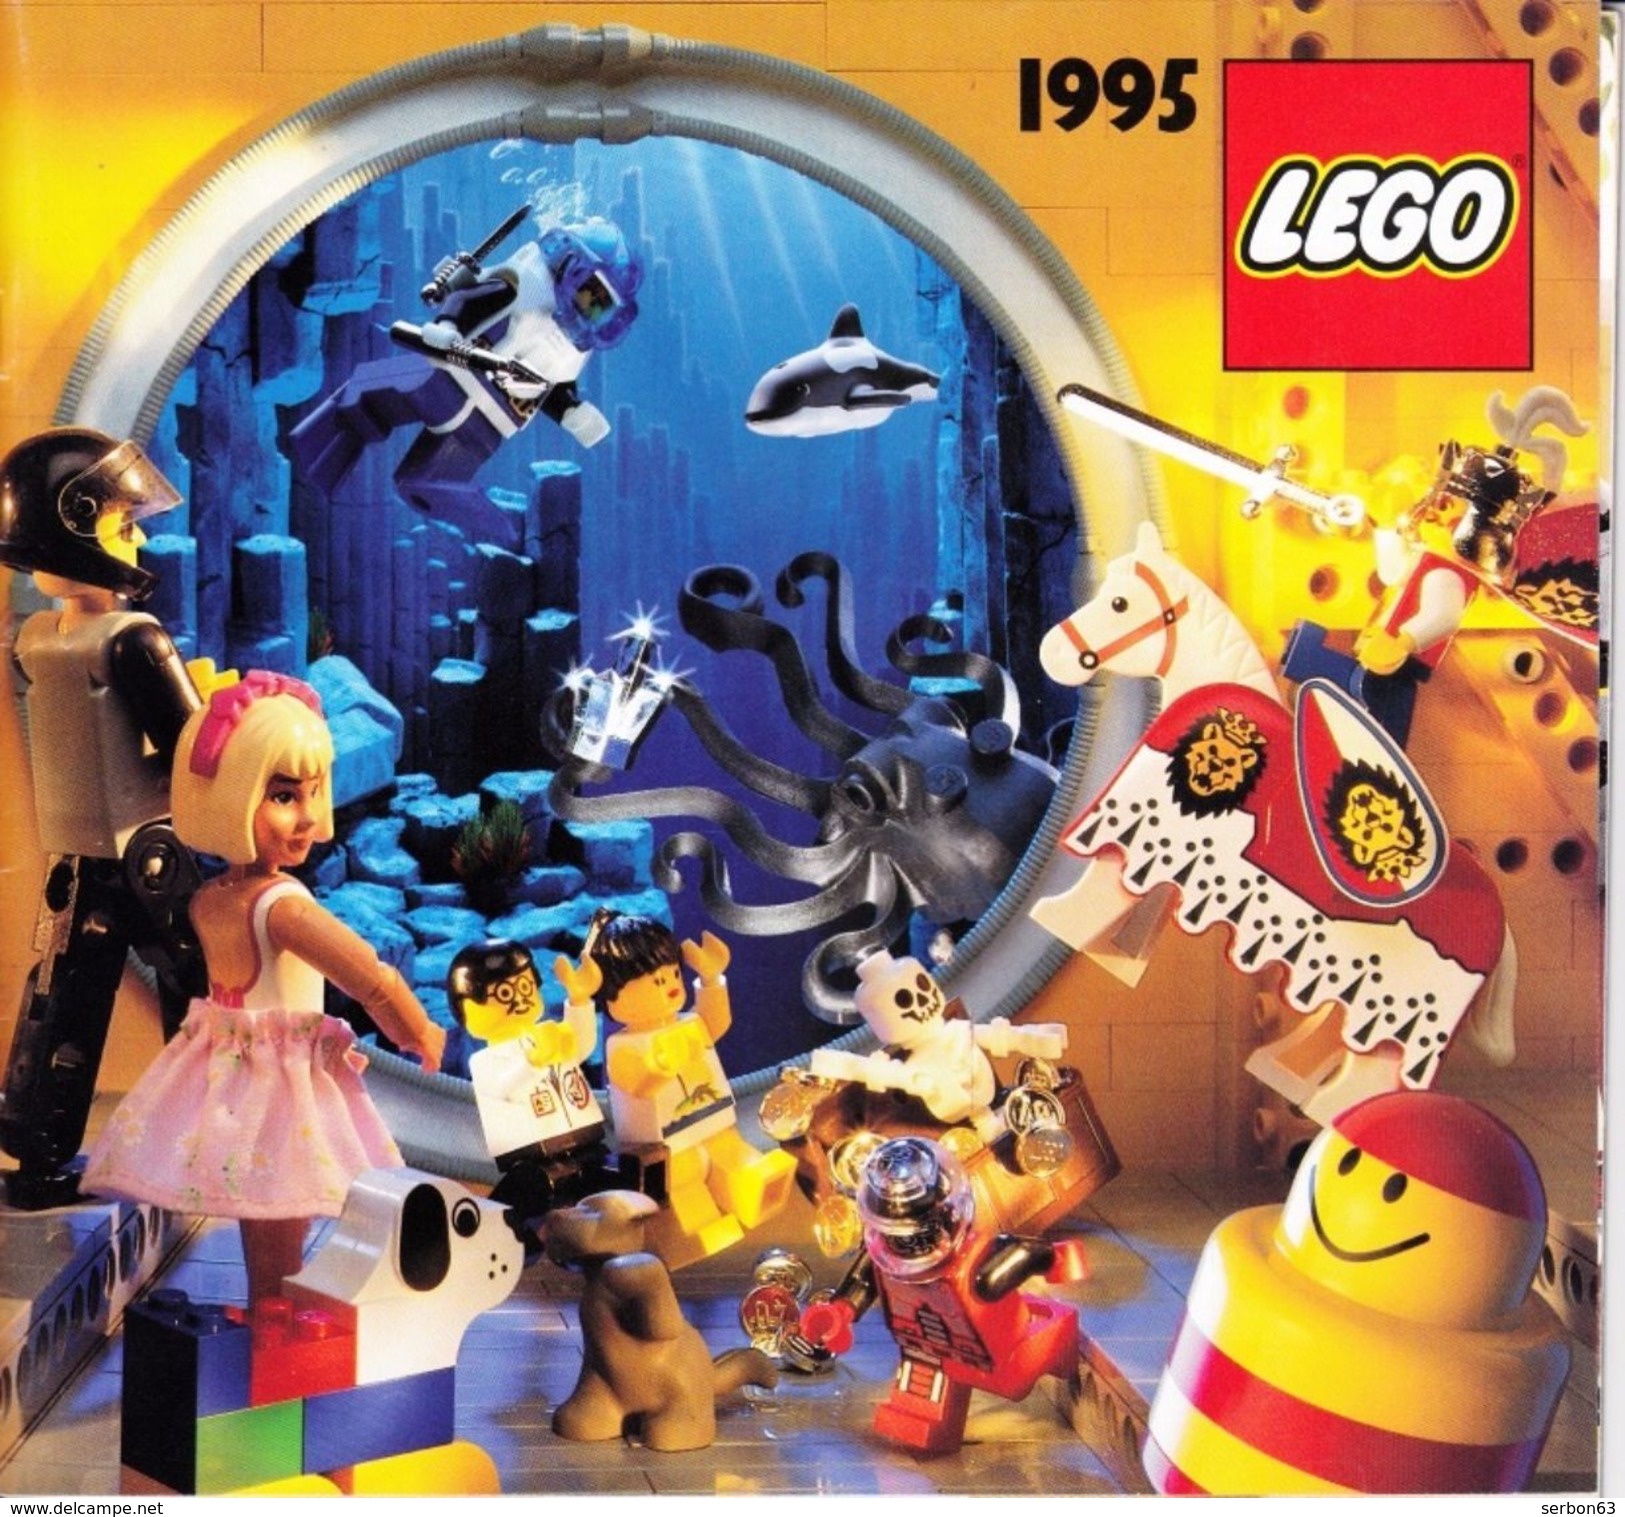 UN CATALOGUE LEGO DE 1995 56 PAGES COULEUR LEGER PLI SUR LA DE (SUR MON SITE Serbon63 DES MILLIERS D'ARTICLES EN VENTES) - Catalogues